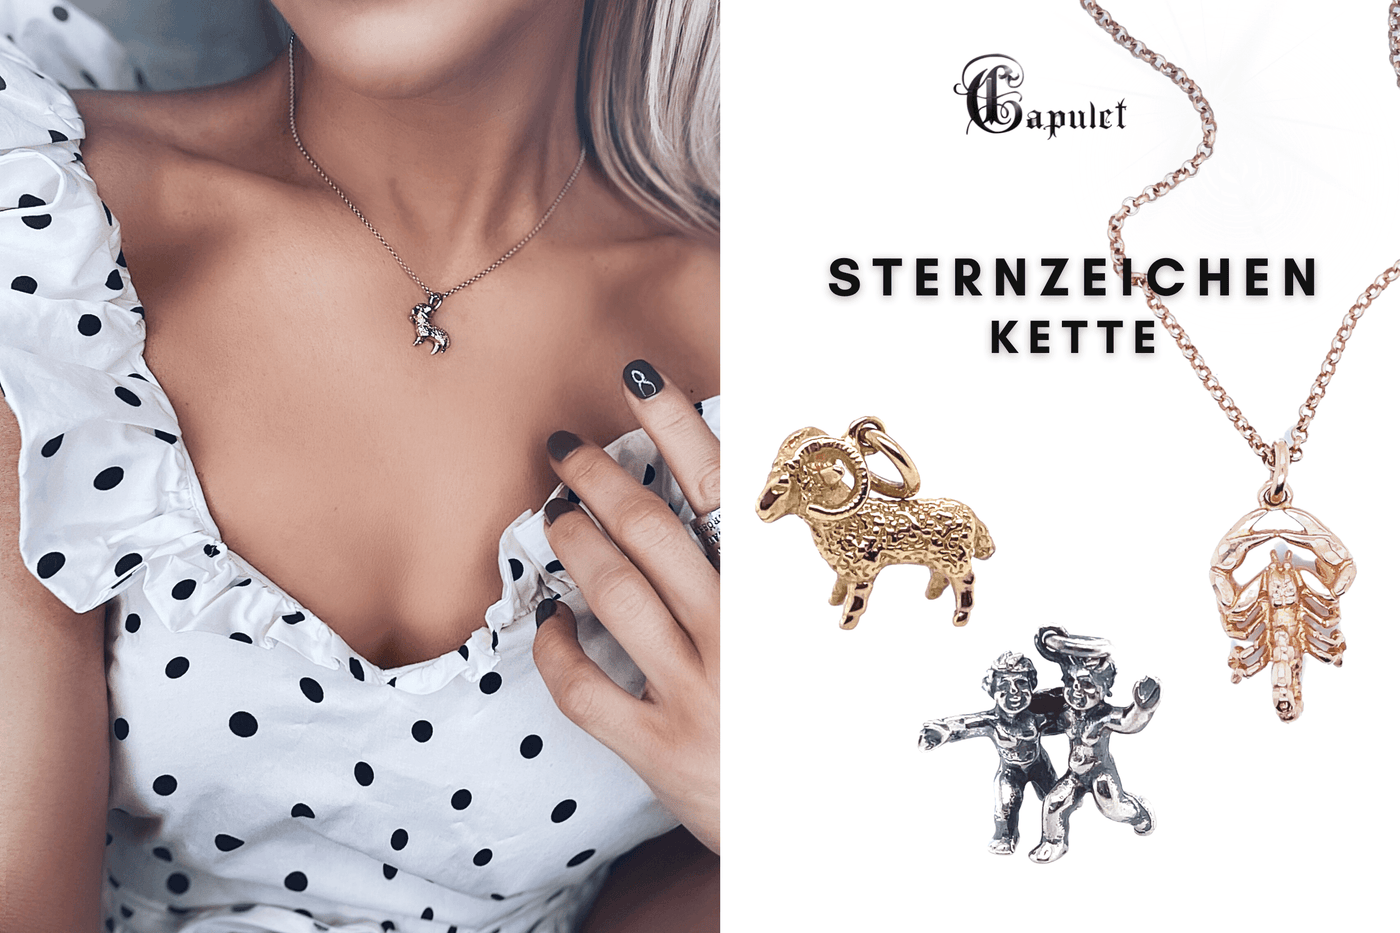 Sternzeichen Kette Zwillinge | zierliche Silberkette | Halskette Damen | CAPULET Schmuck Werkstatt München